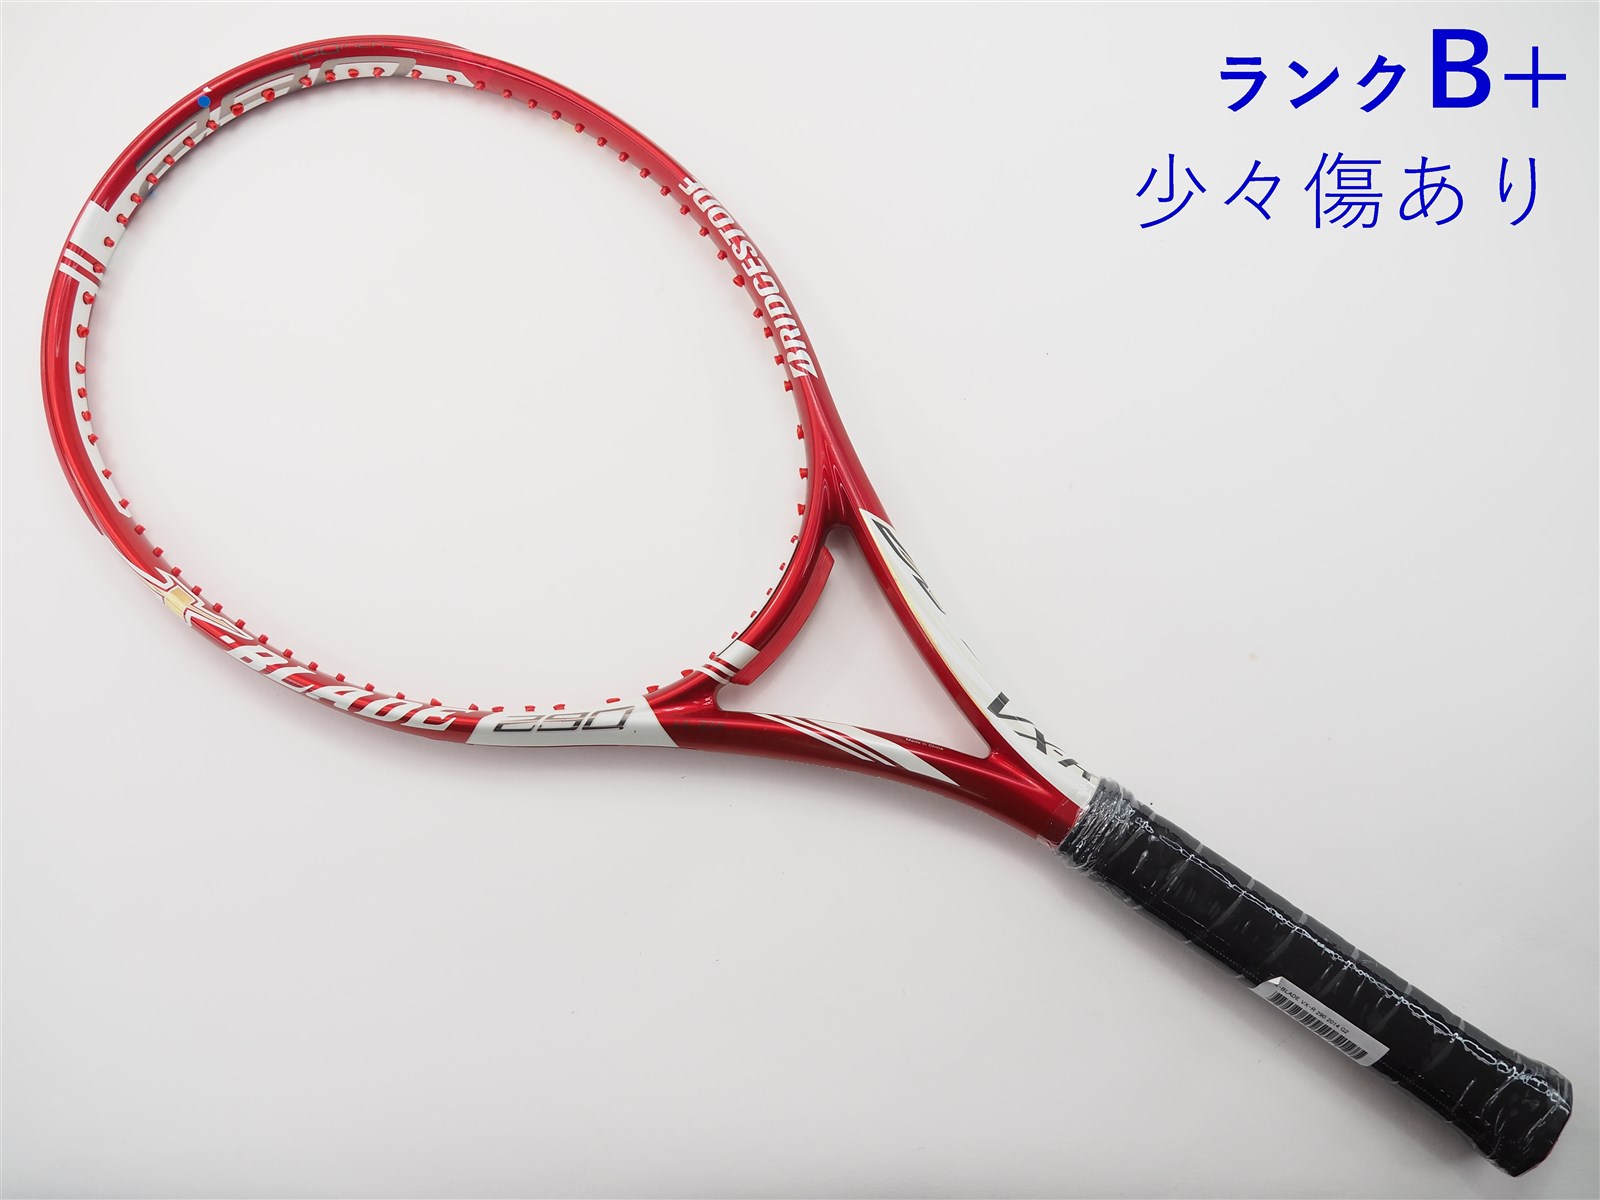 ブリヂストン テニスラケット ブリヂストン エックスブレード ブイエックスアール 275 2014年モデル (G2)BRIDGESTONE X-BLADE VX-R 275 2014